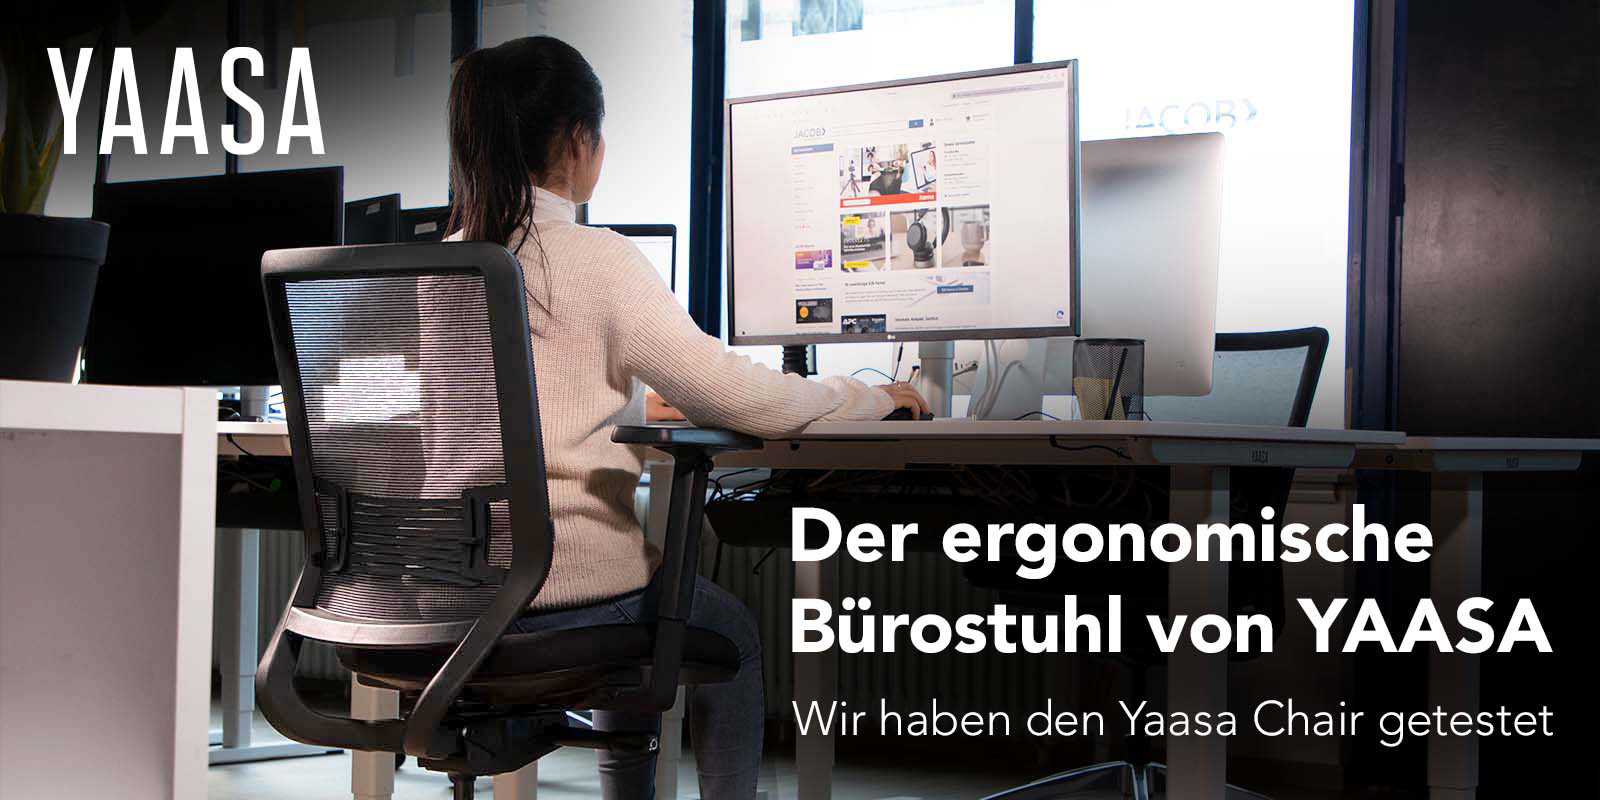 Der ergonomische Bürostuhl von YAASA